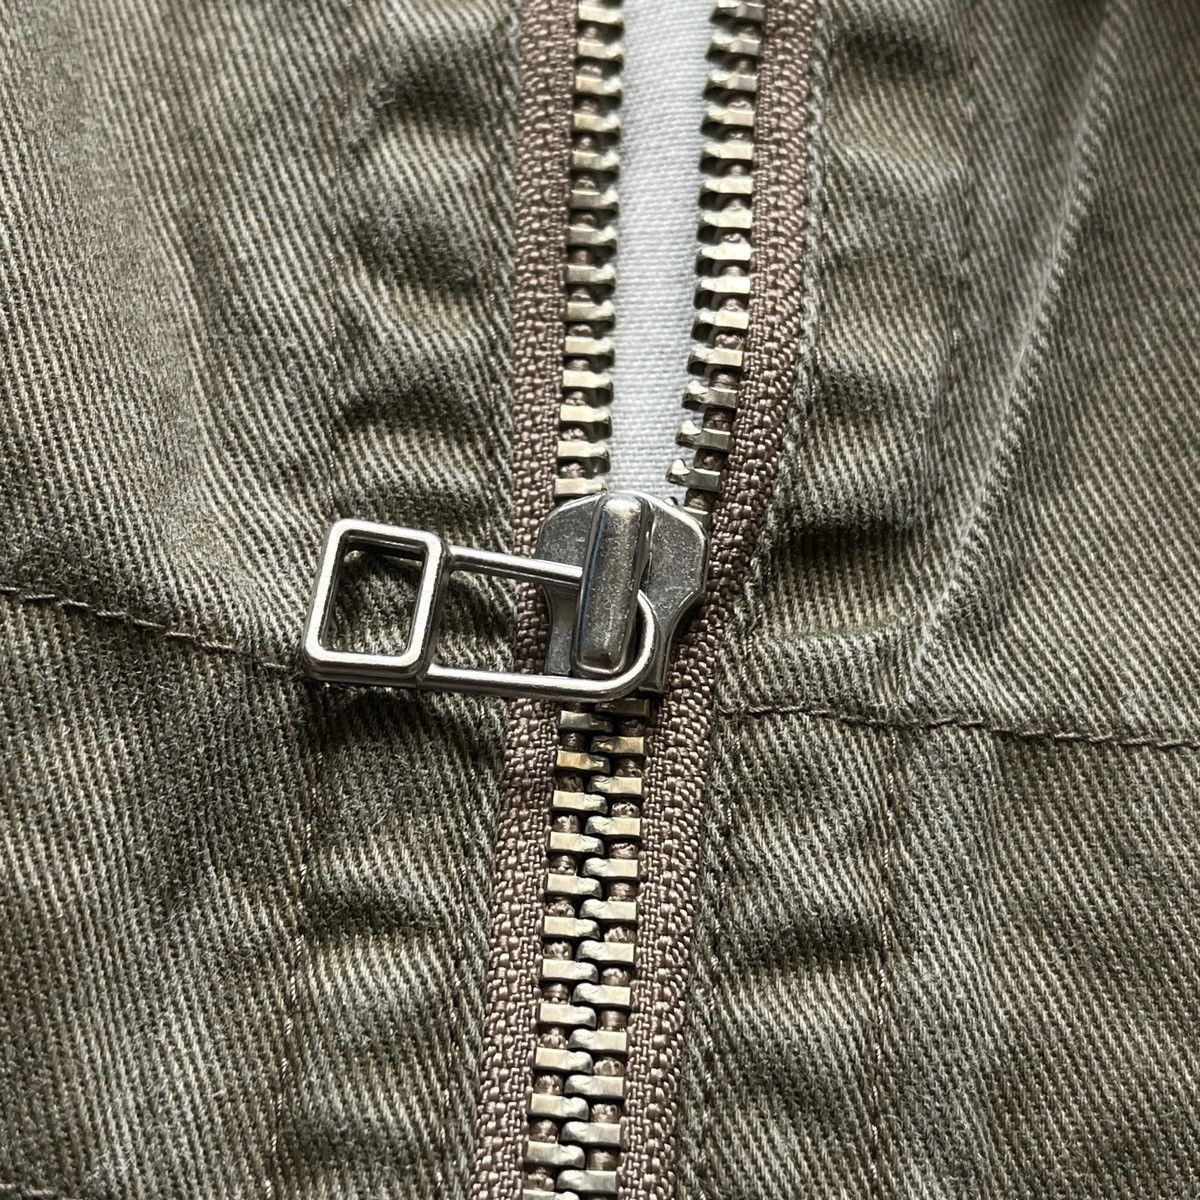 Yohji Yamamoto A.A.R Pockets Jacket - 9